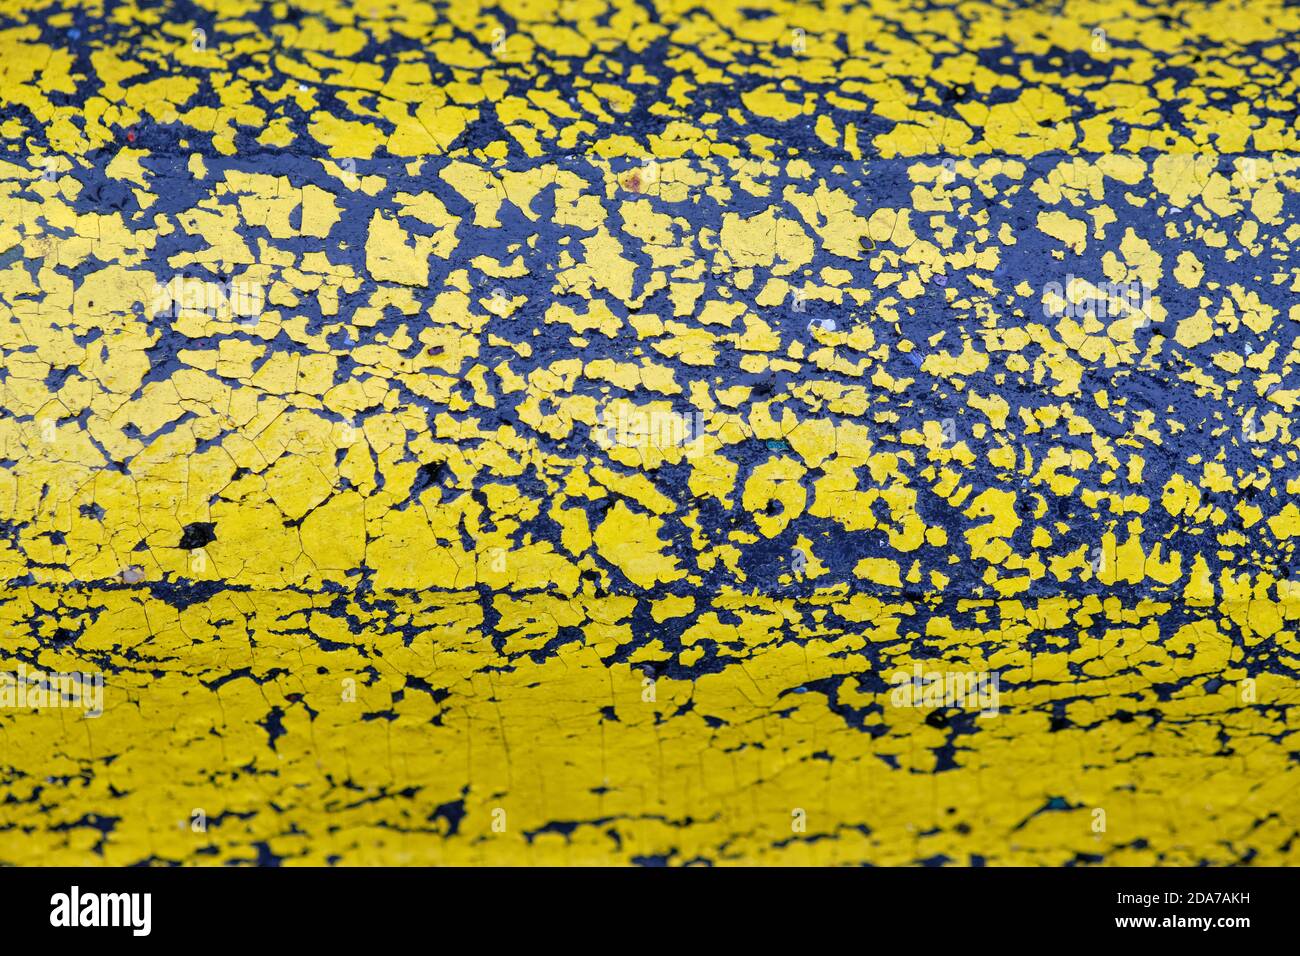 Arrière-plan avec gros plan de peinture jaune qui s'écaille d'une partie en plastique noir humide d'une limite de route. Vu en Allemagne en octobre. Banque D'Images